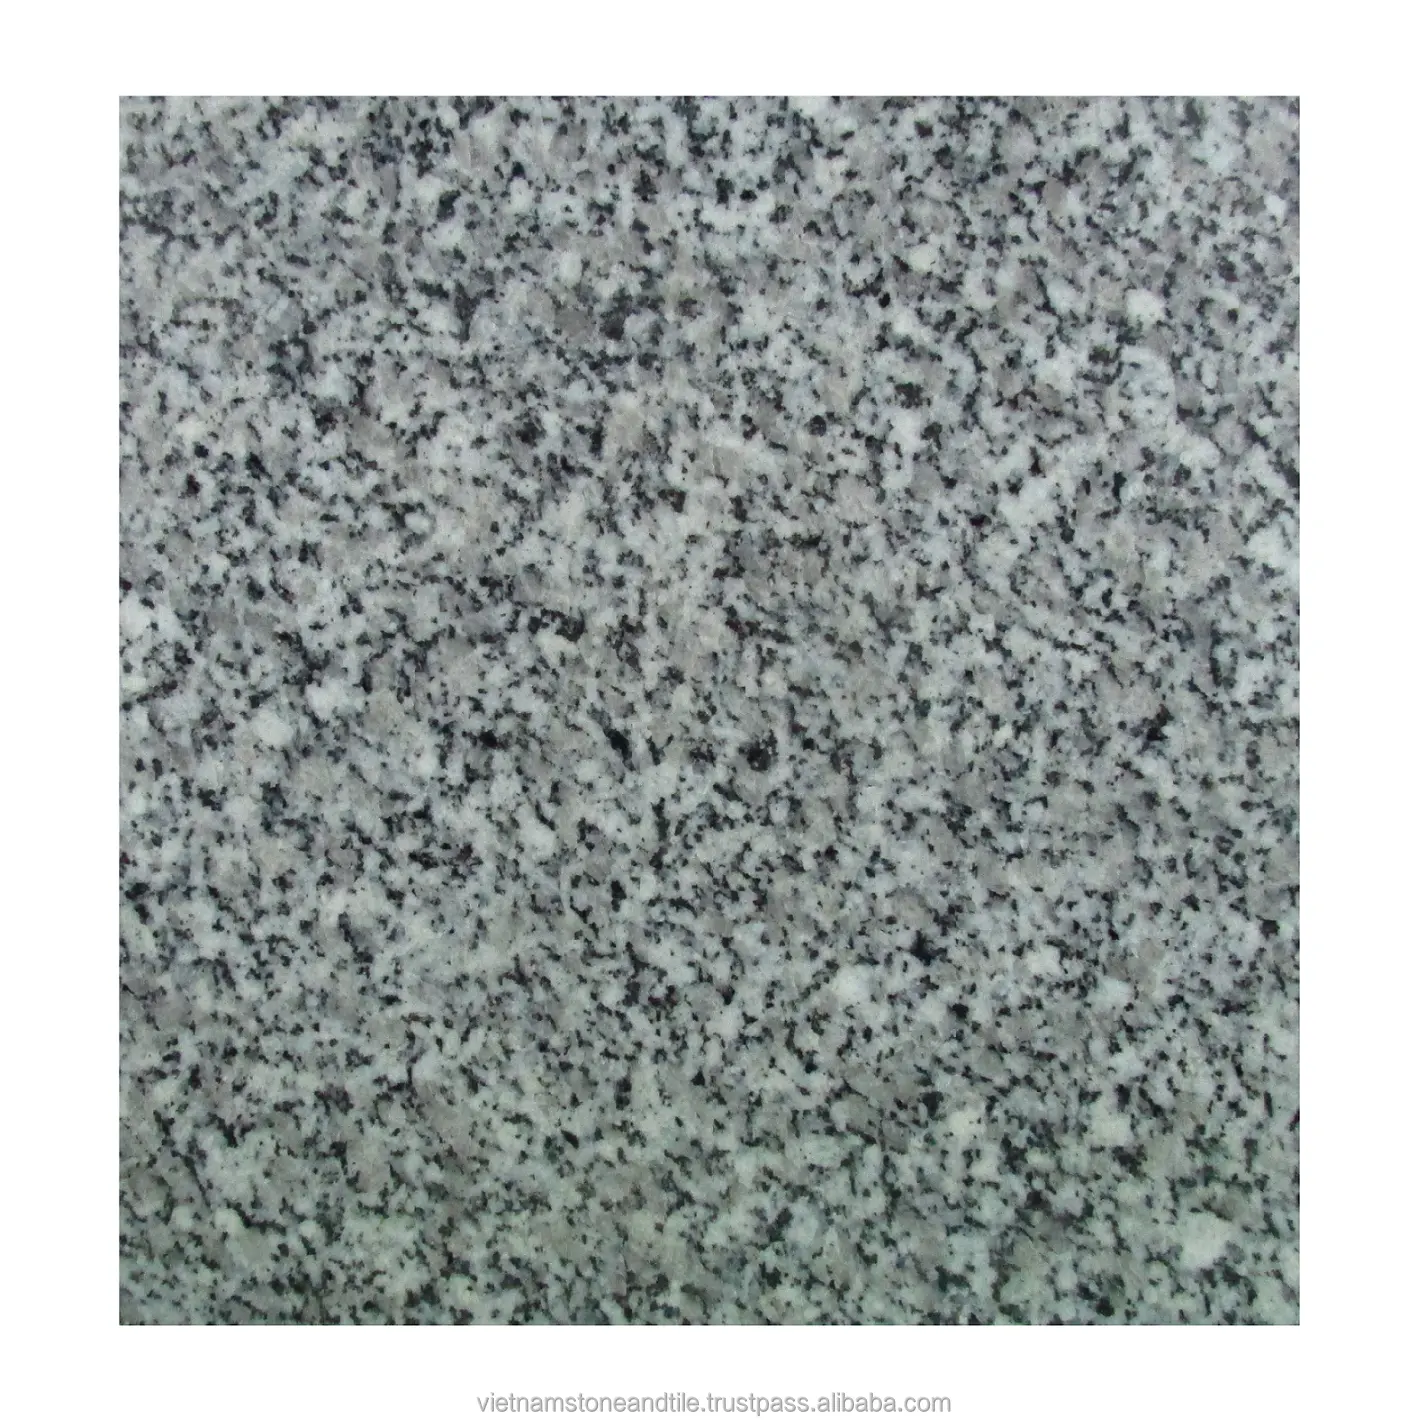 Doğal taş granit fayans döşeme lehçe sırlı özel boyut pembe mor beyaz otel uygulamaları için granit fayans